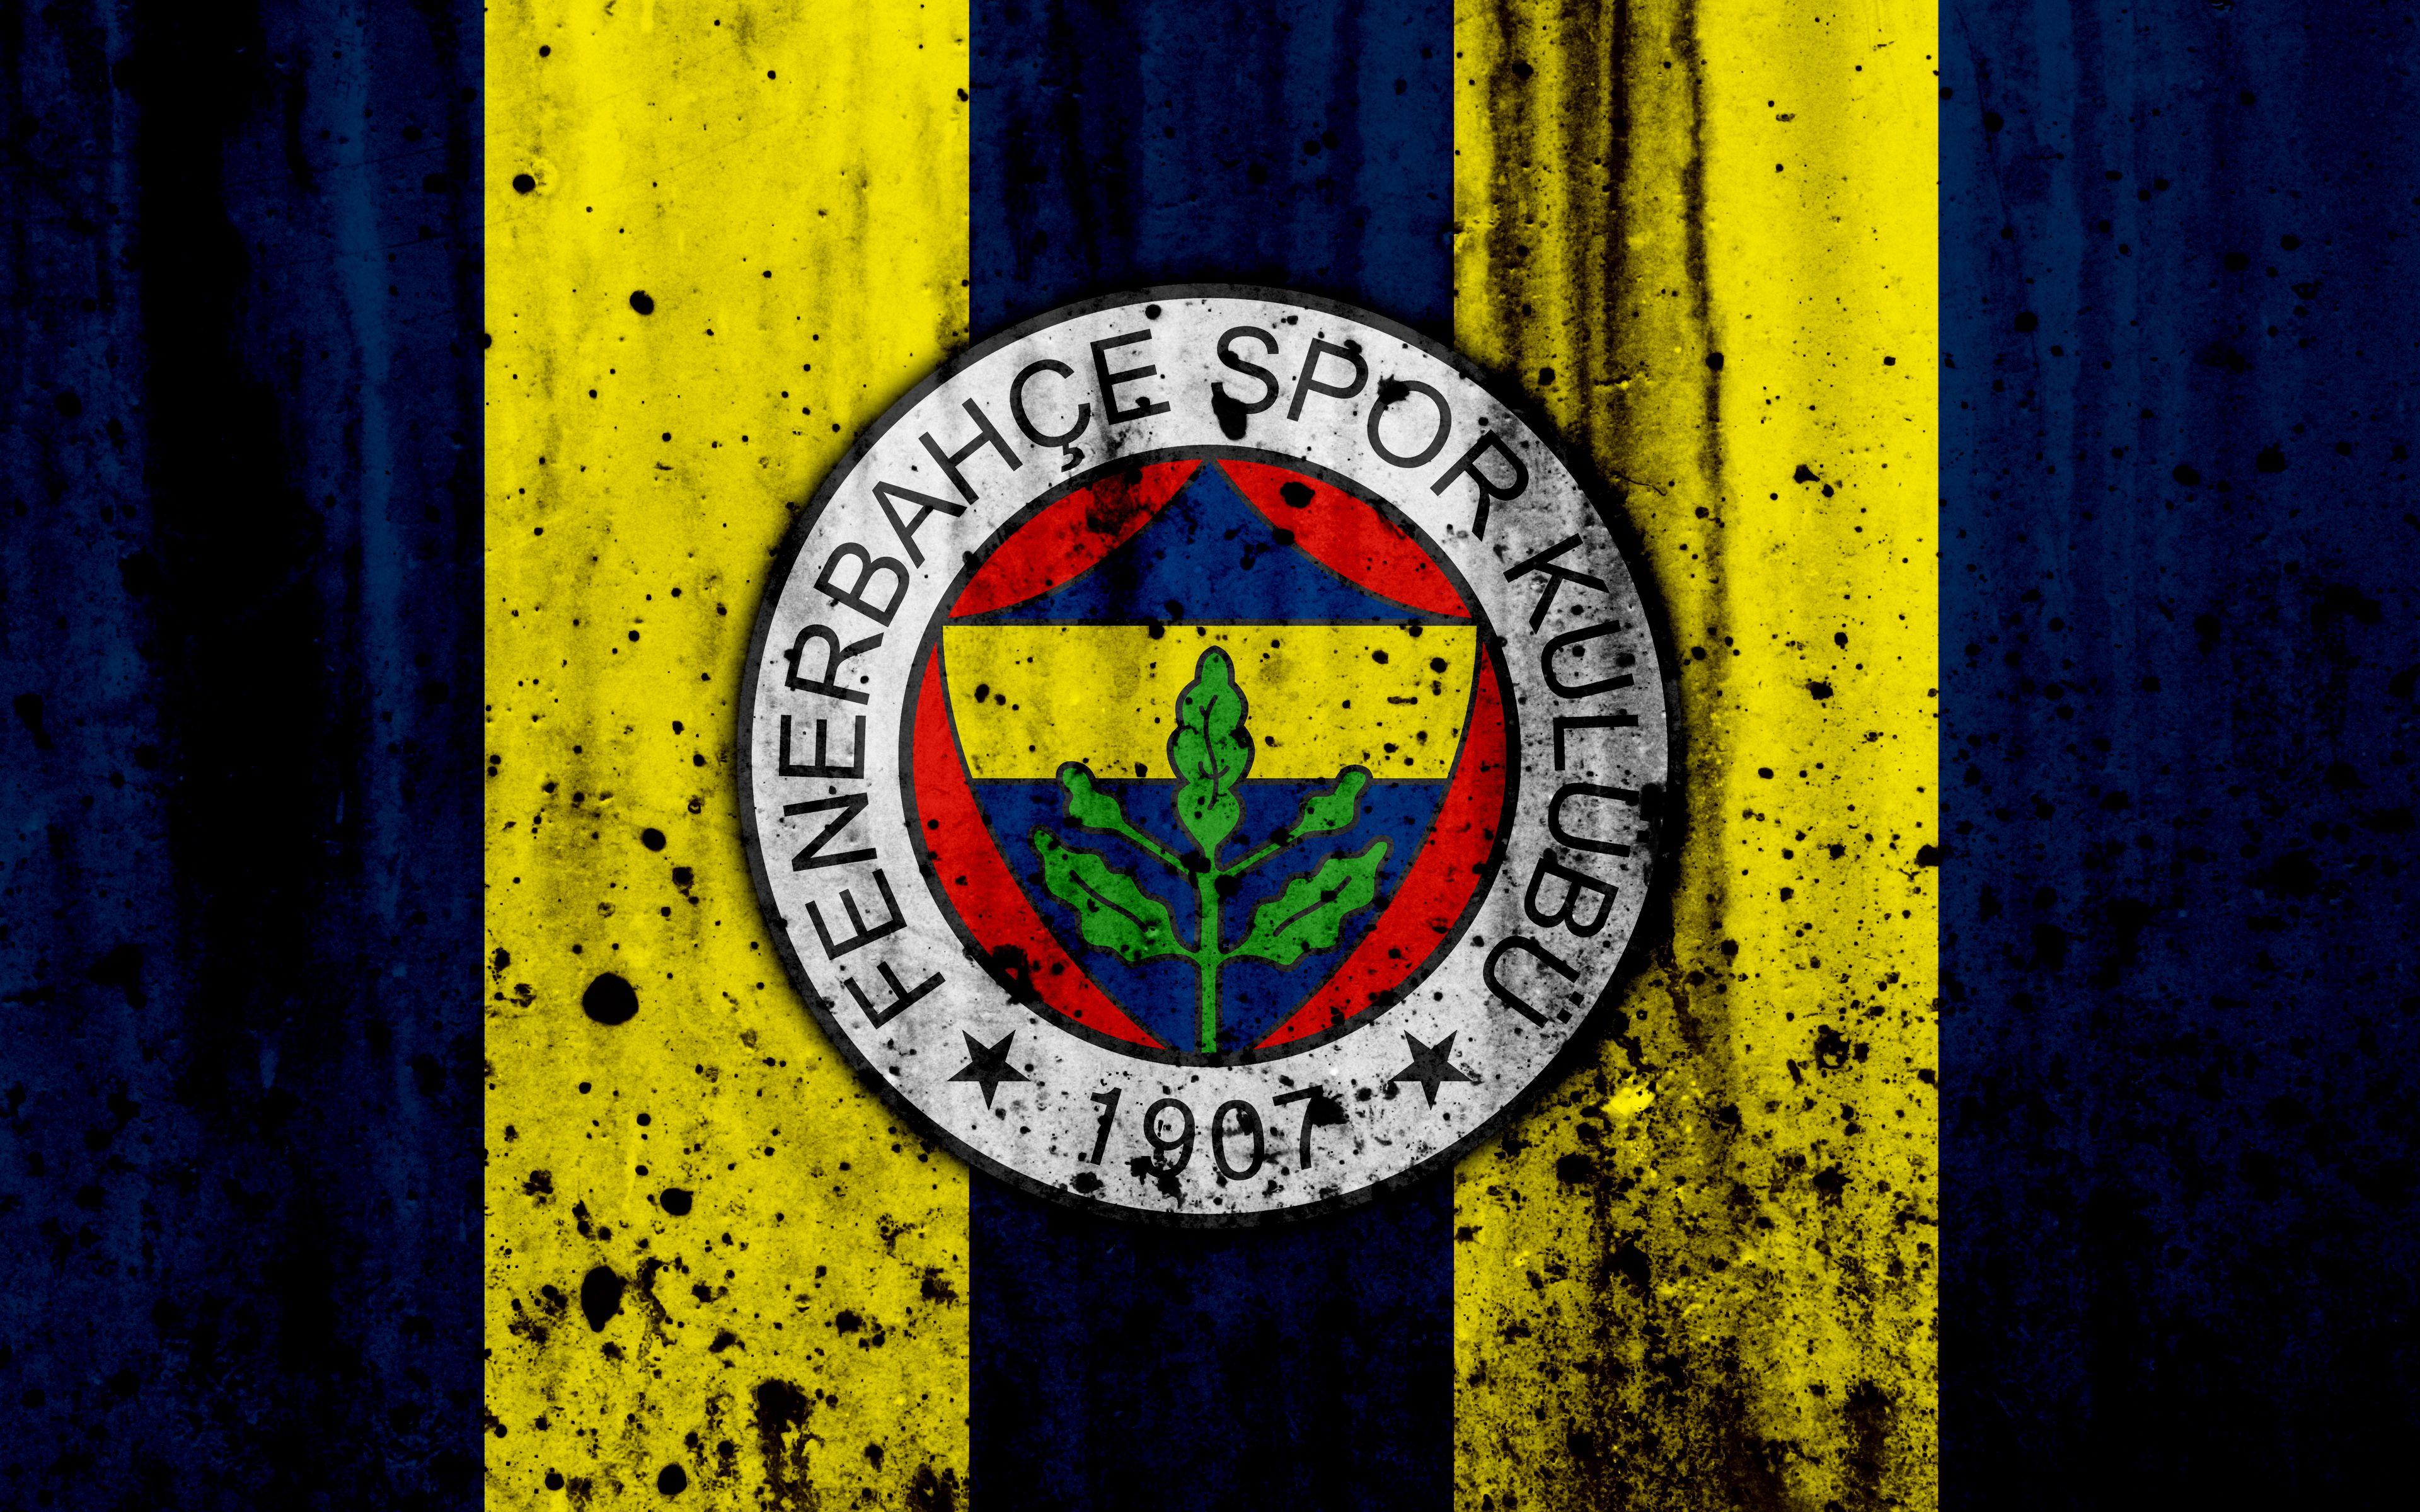 Fenerbahçe S.K Wallpaper 3840×2400